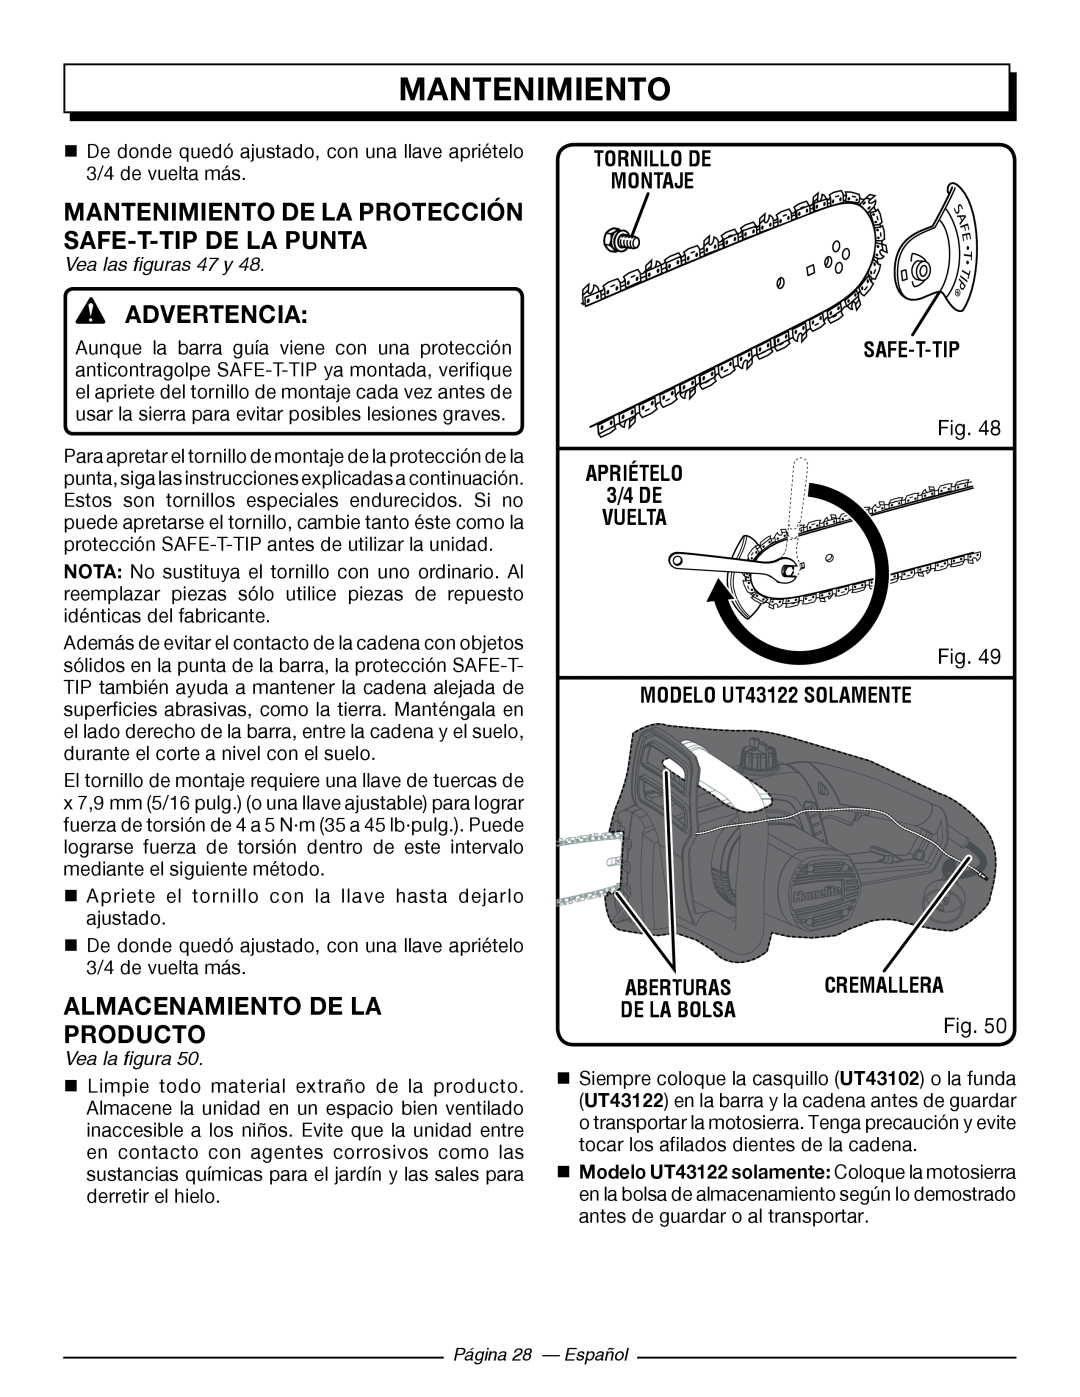 Homelite UT43122 Almacenamiento De La Producto, Mantenimiento De La Protección Safe-T-Tip De La Punta, Advertencia 